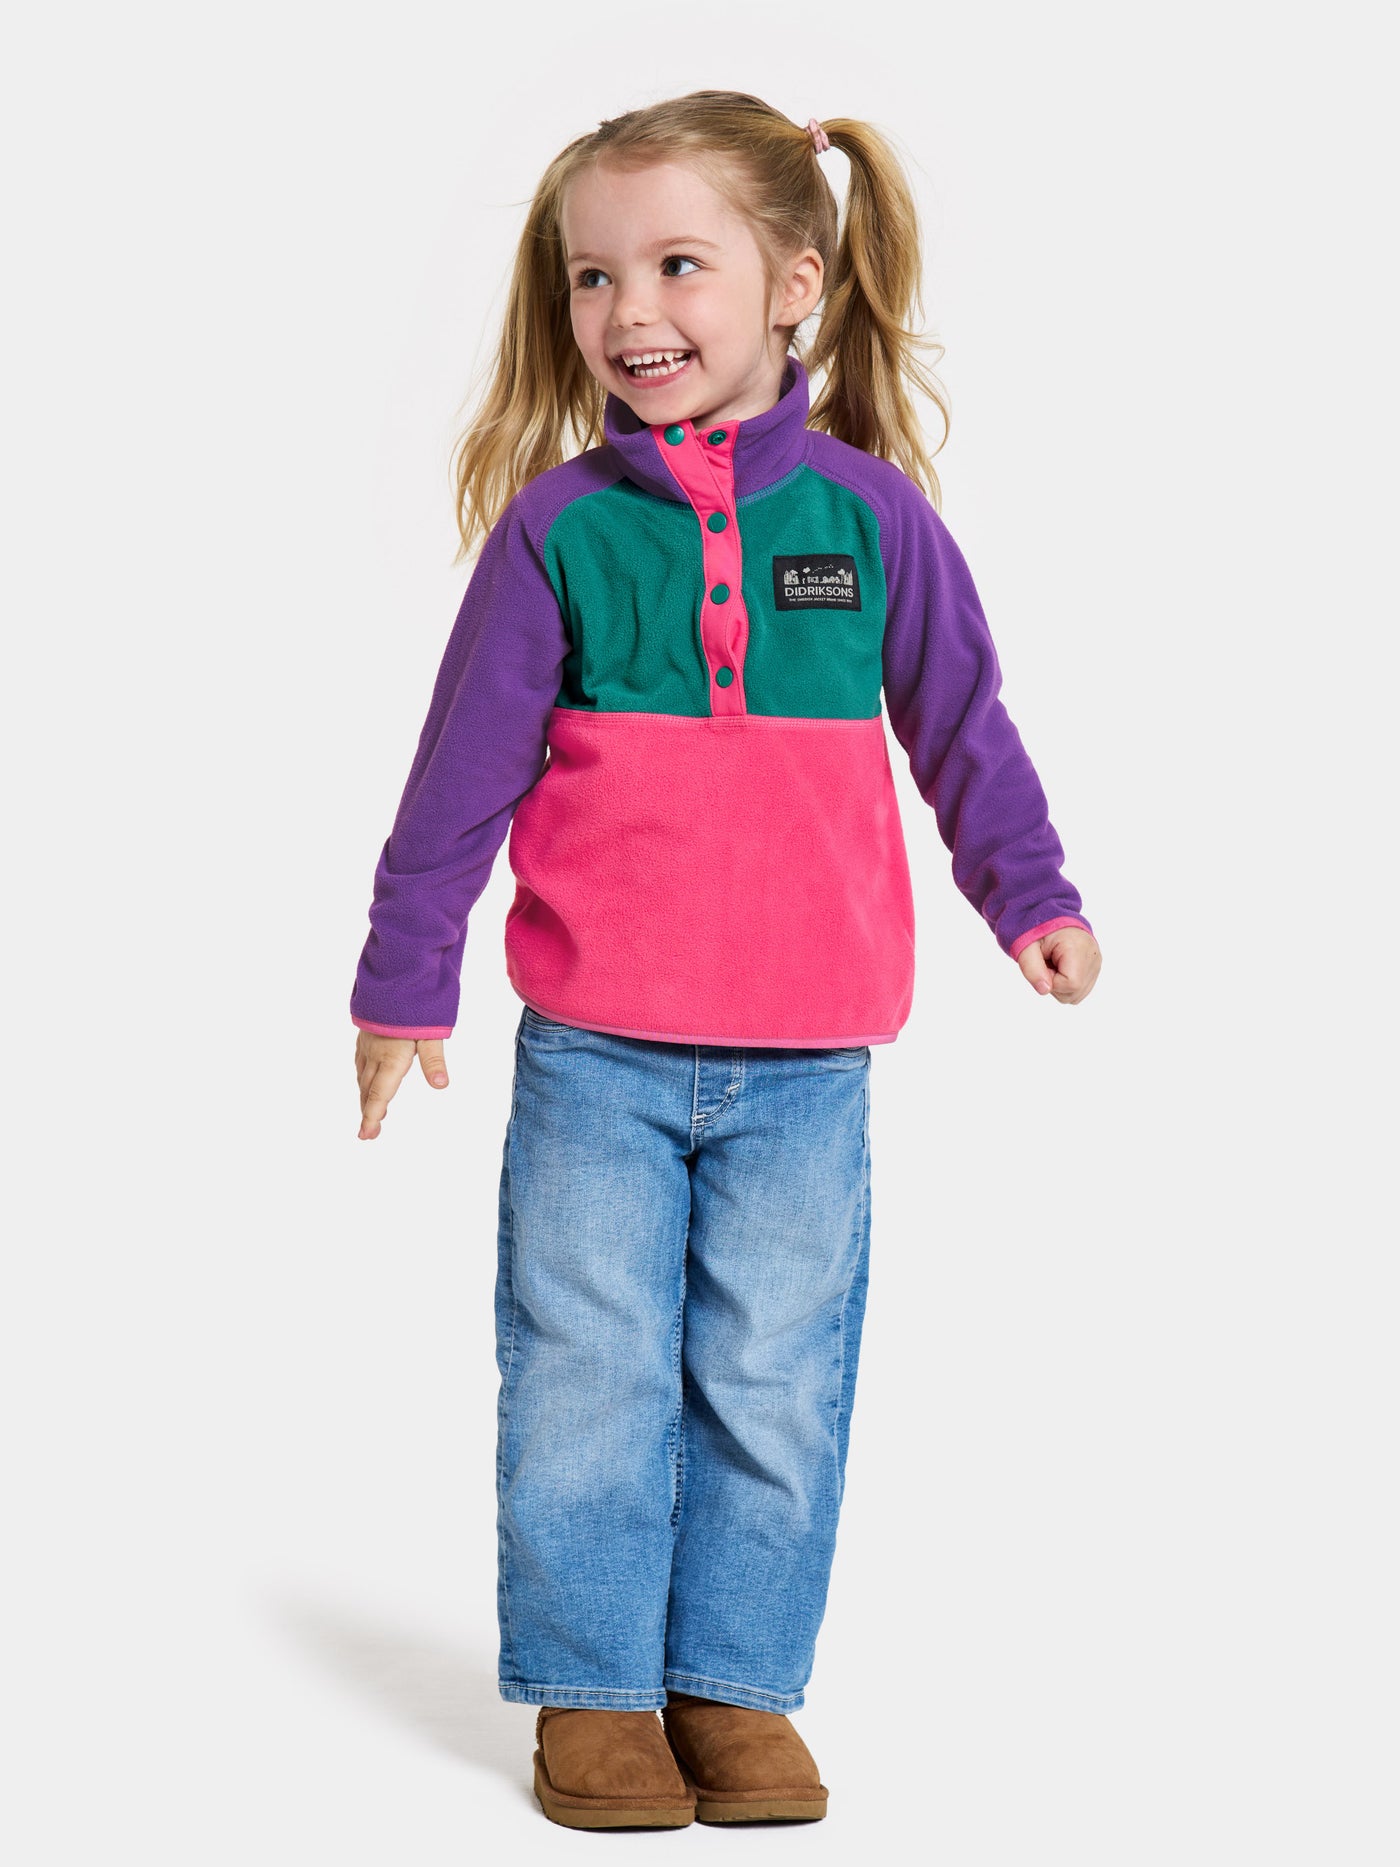 Didriksonsin lasten Monte Half Button -fleecepusero värissä True Pink lapsen päällä kauempaa kuvattuna